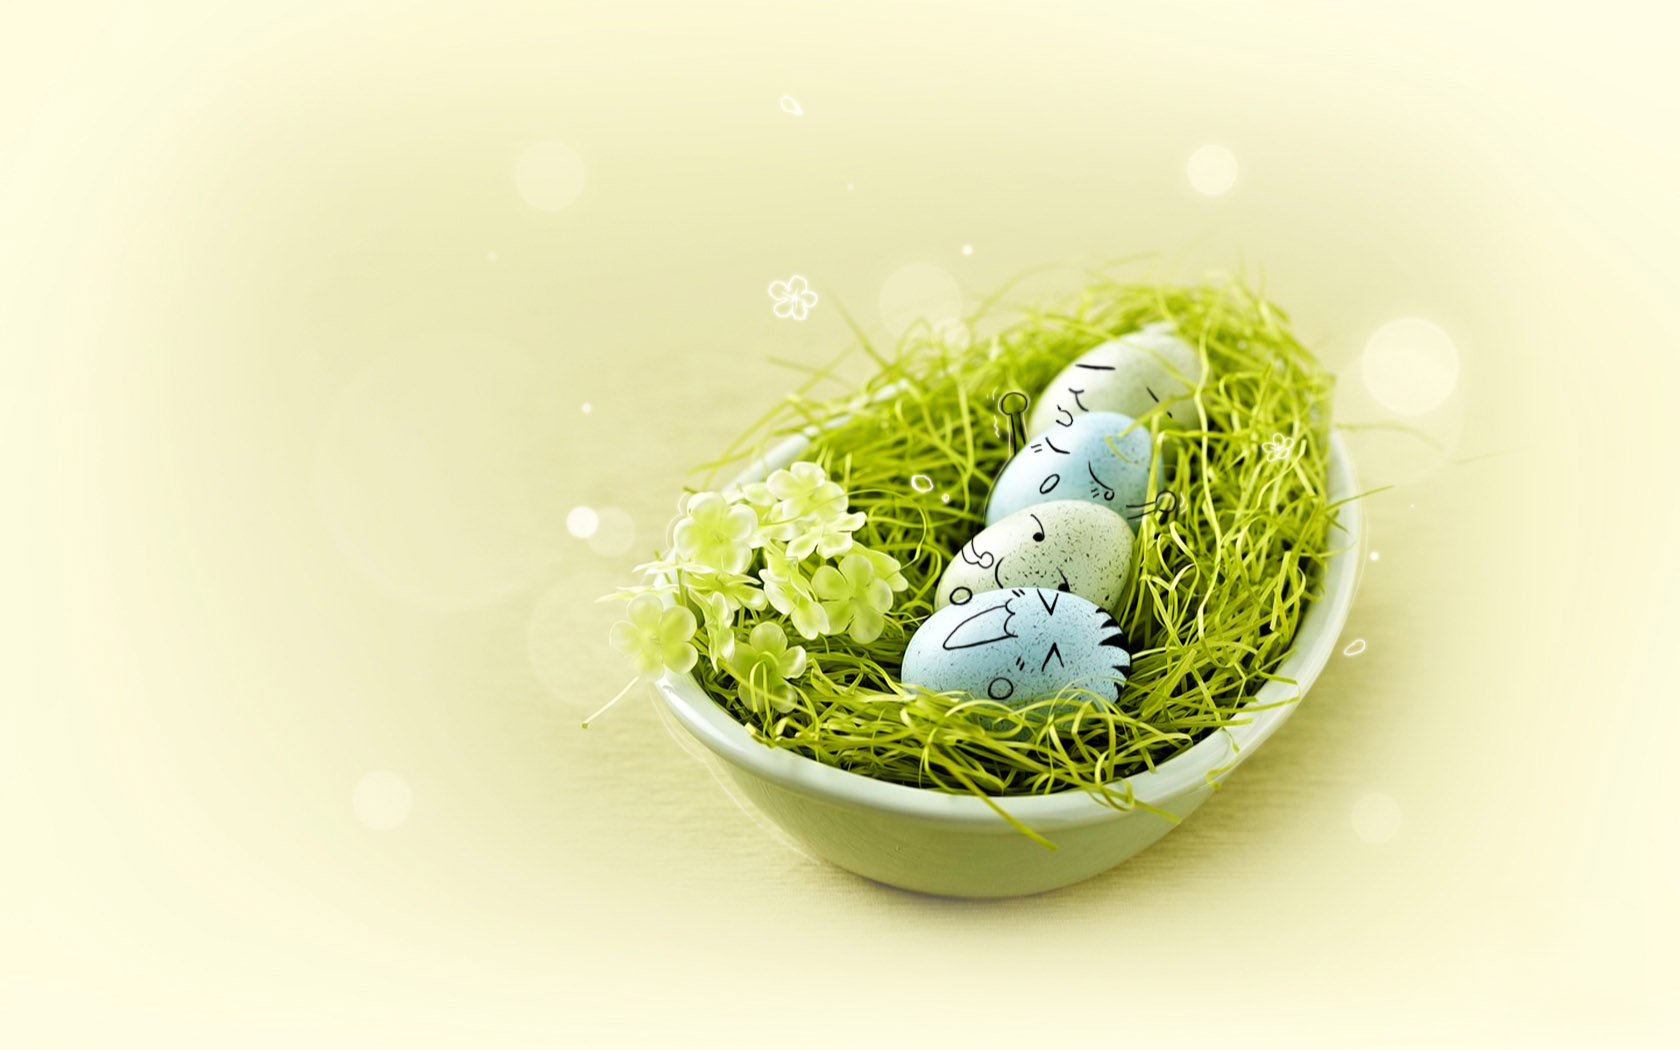 Cute egg desktop background image